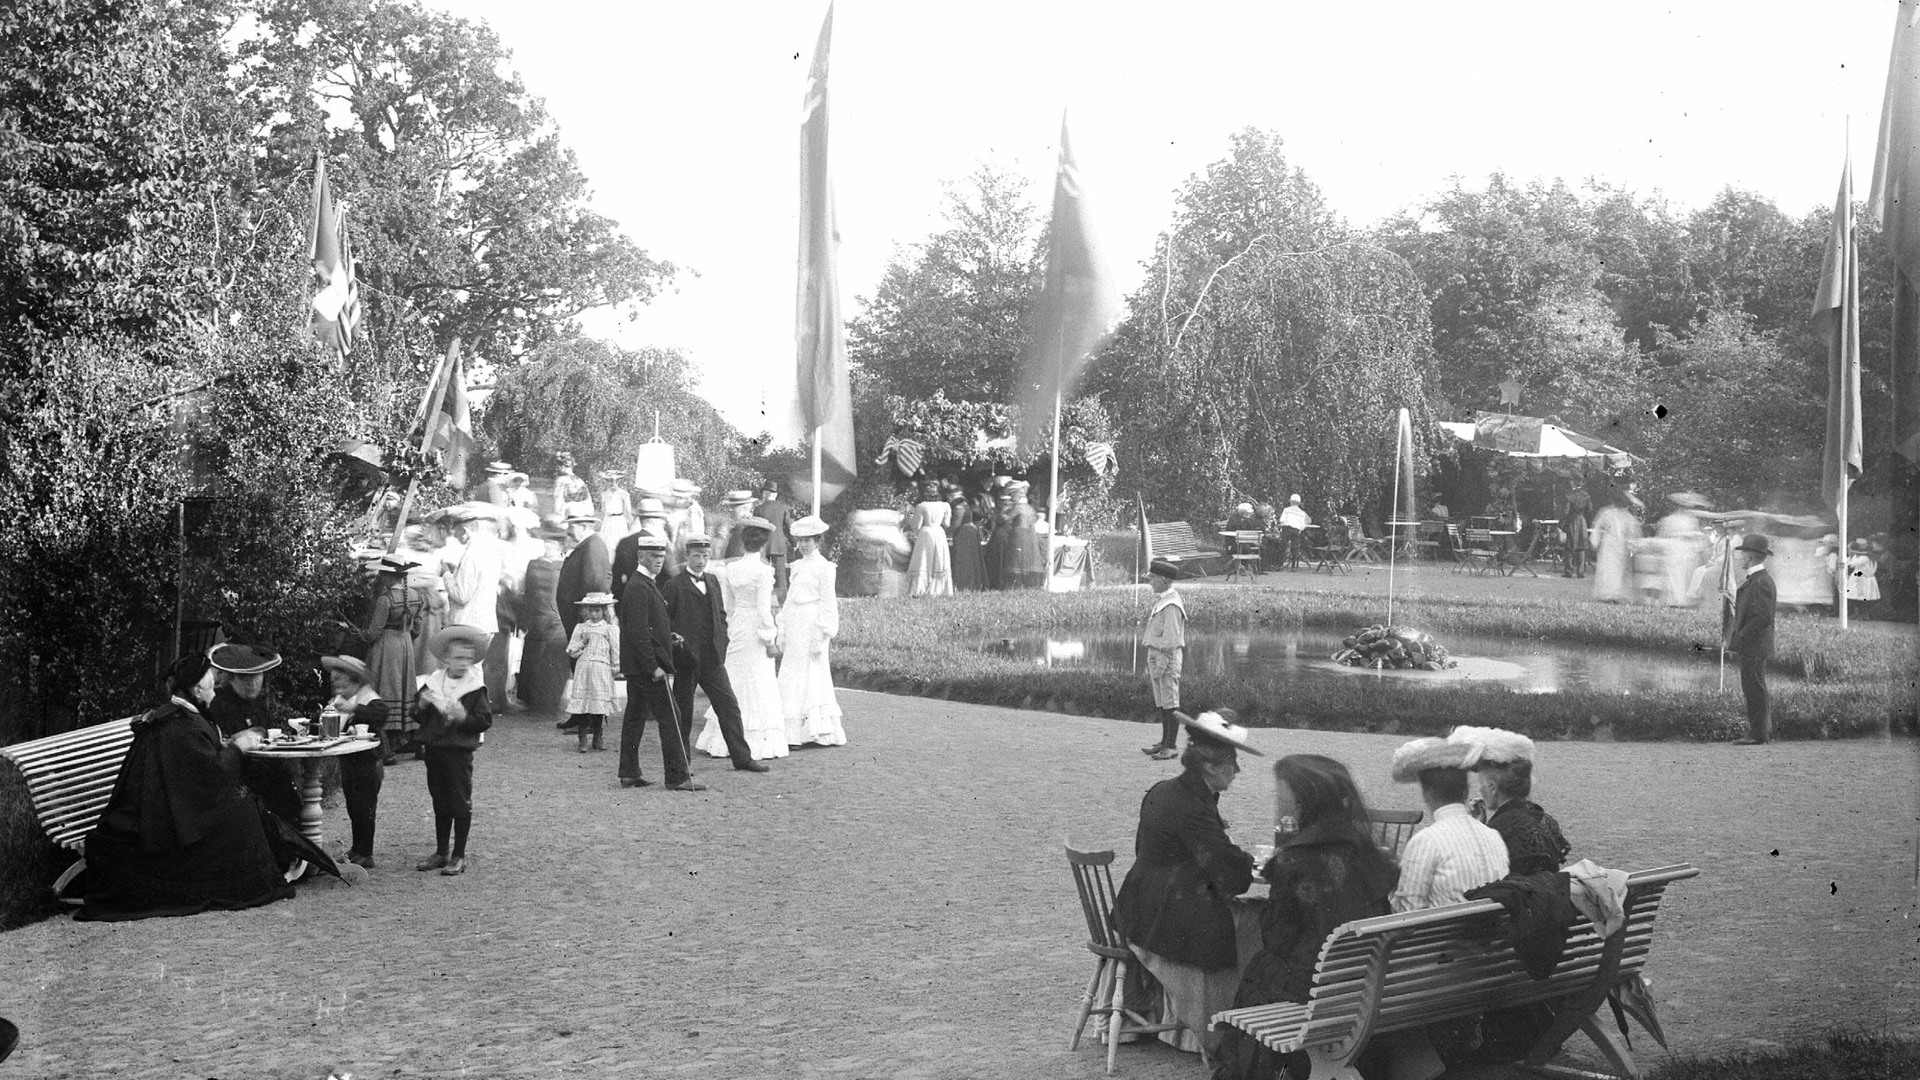 En svartvit, äldre bild från Hjo stadspark. Finklädda personer runt en rund damm.